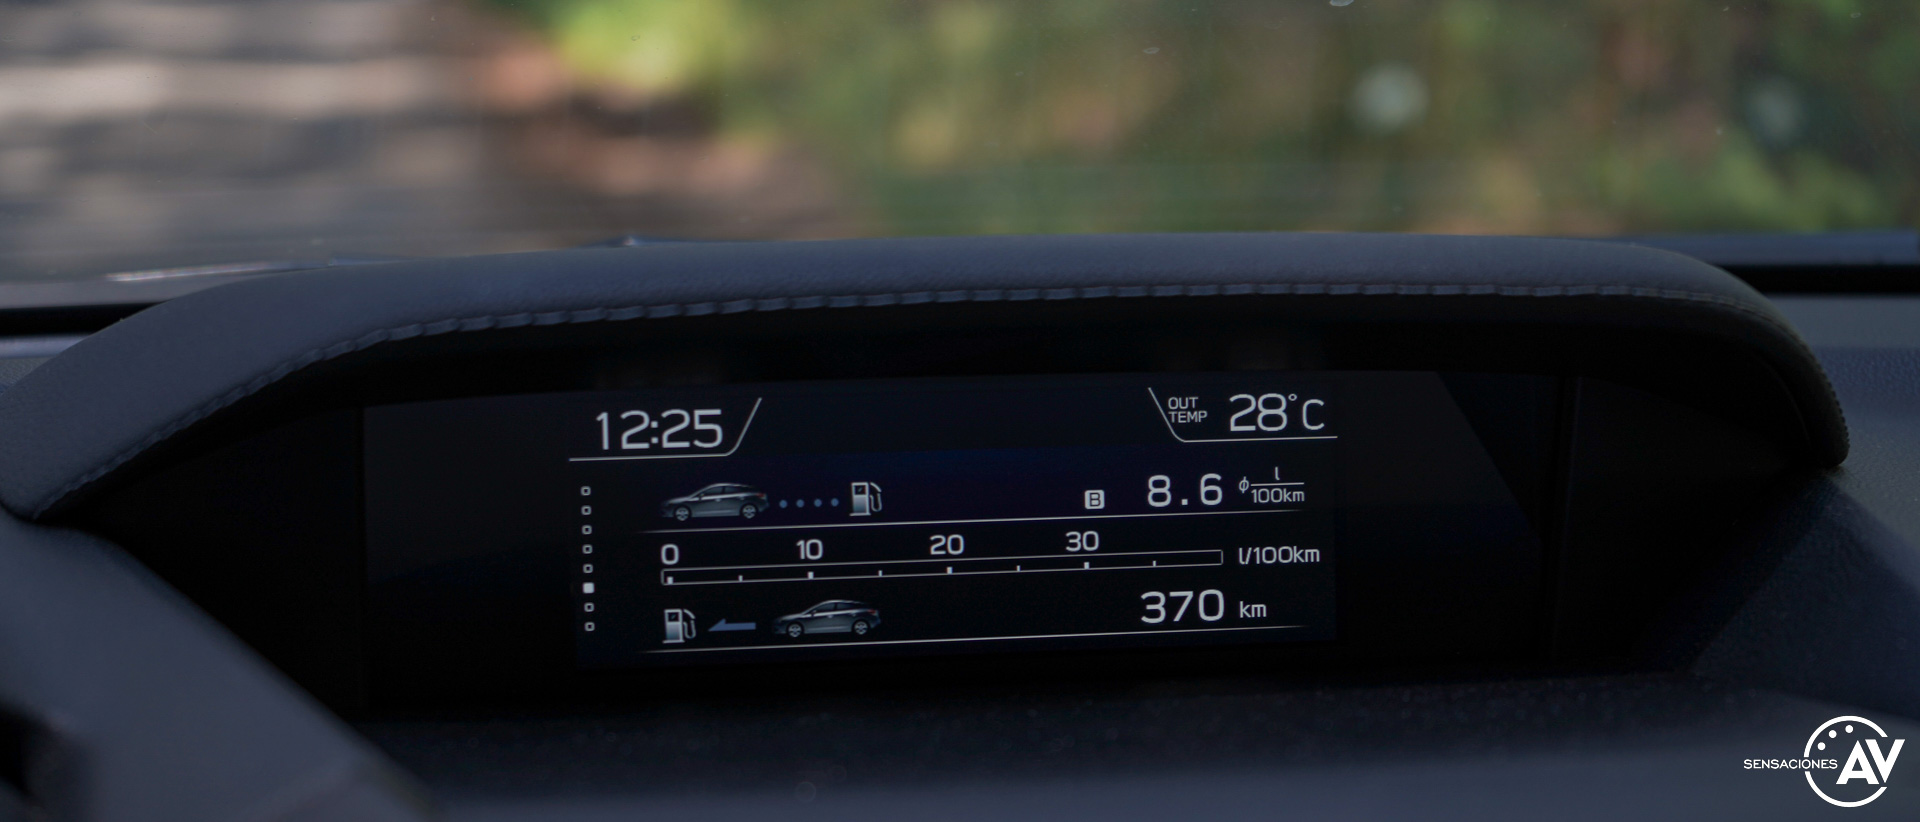 Consumo medio Subaru Impreza ecoHybrid